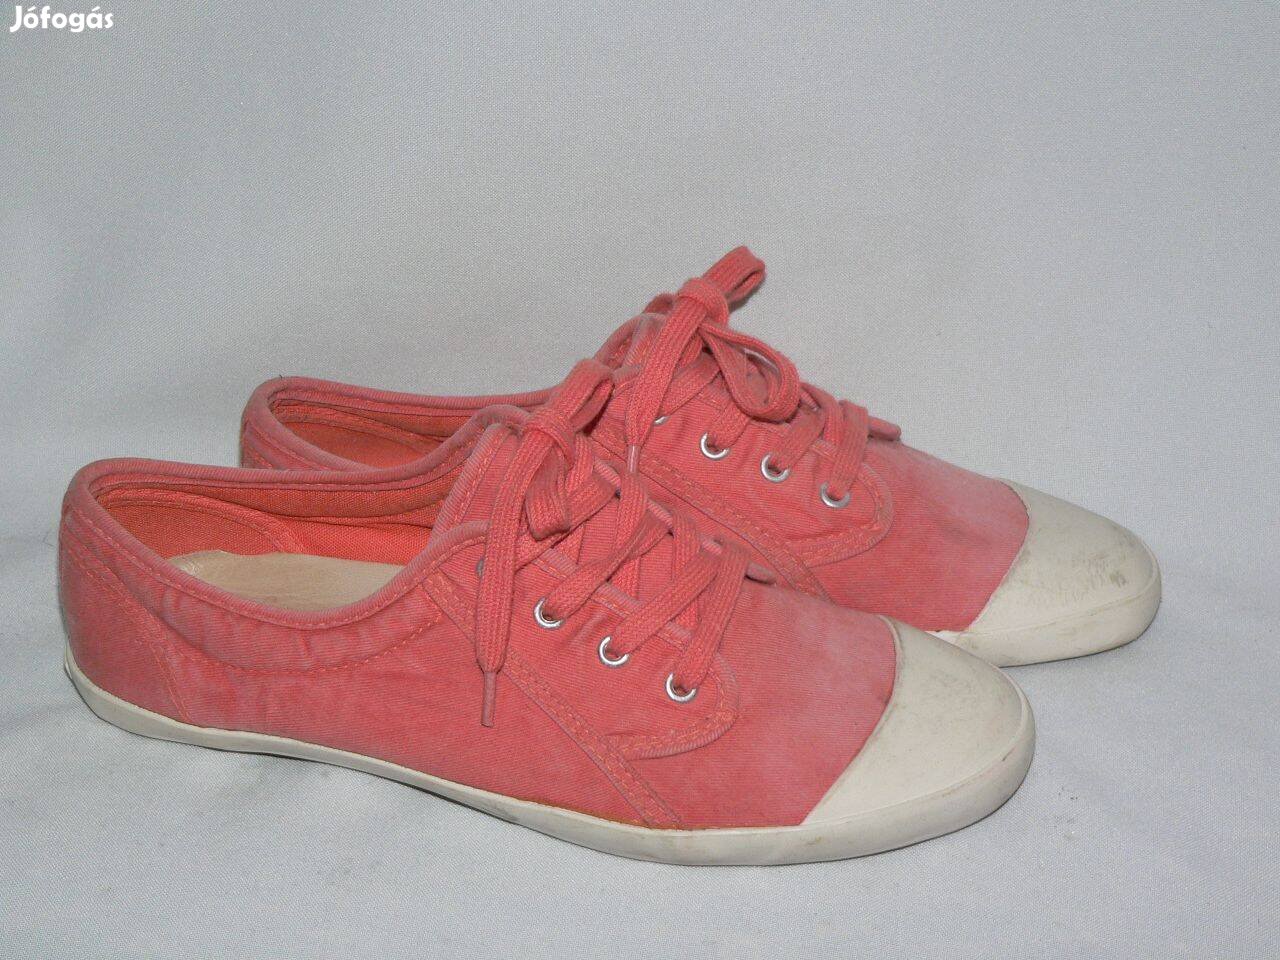 Vagabond korall színű női tornacipő utcai cipő 39